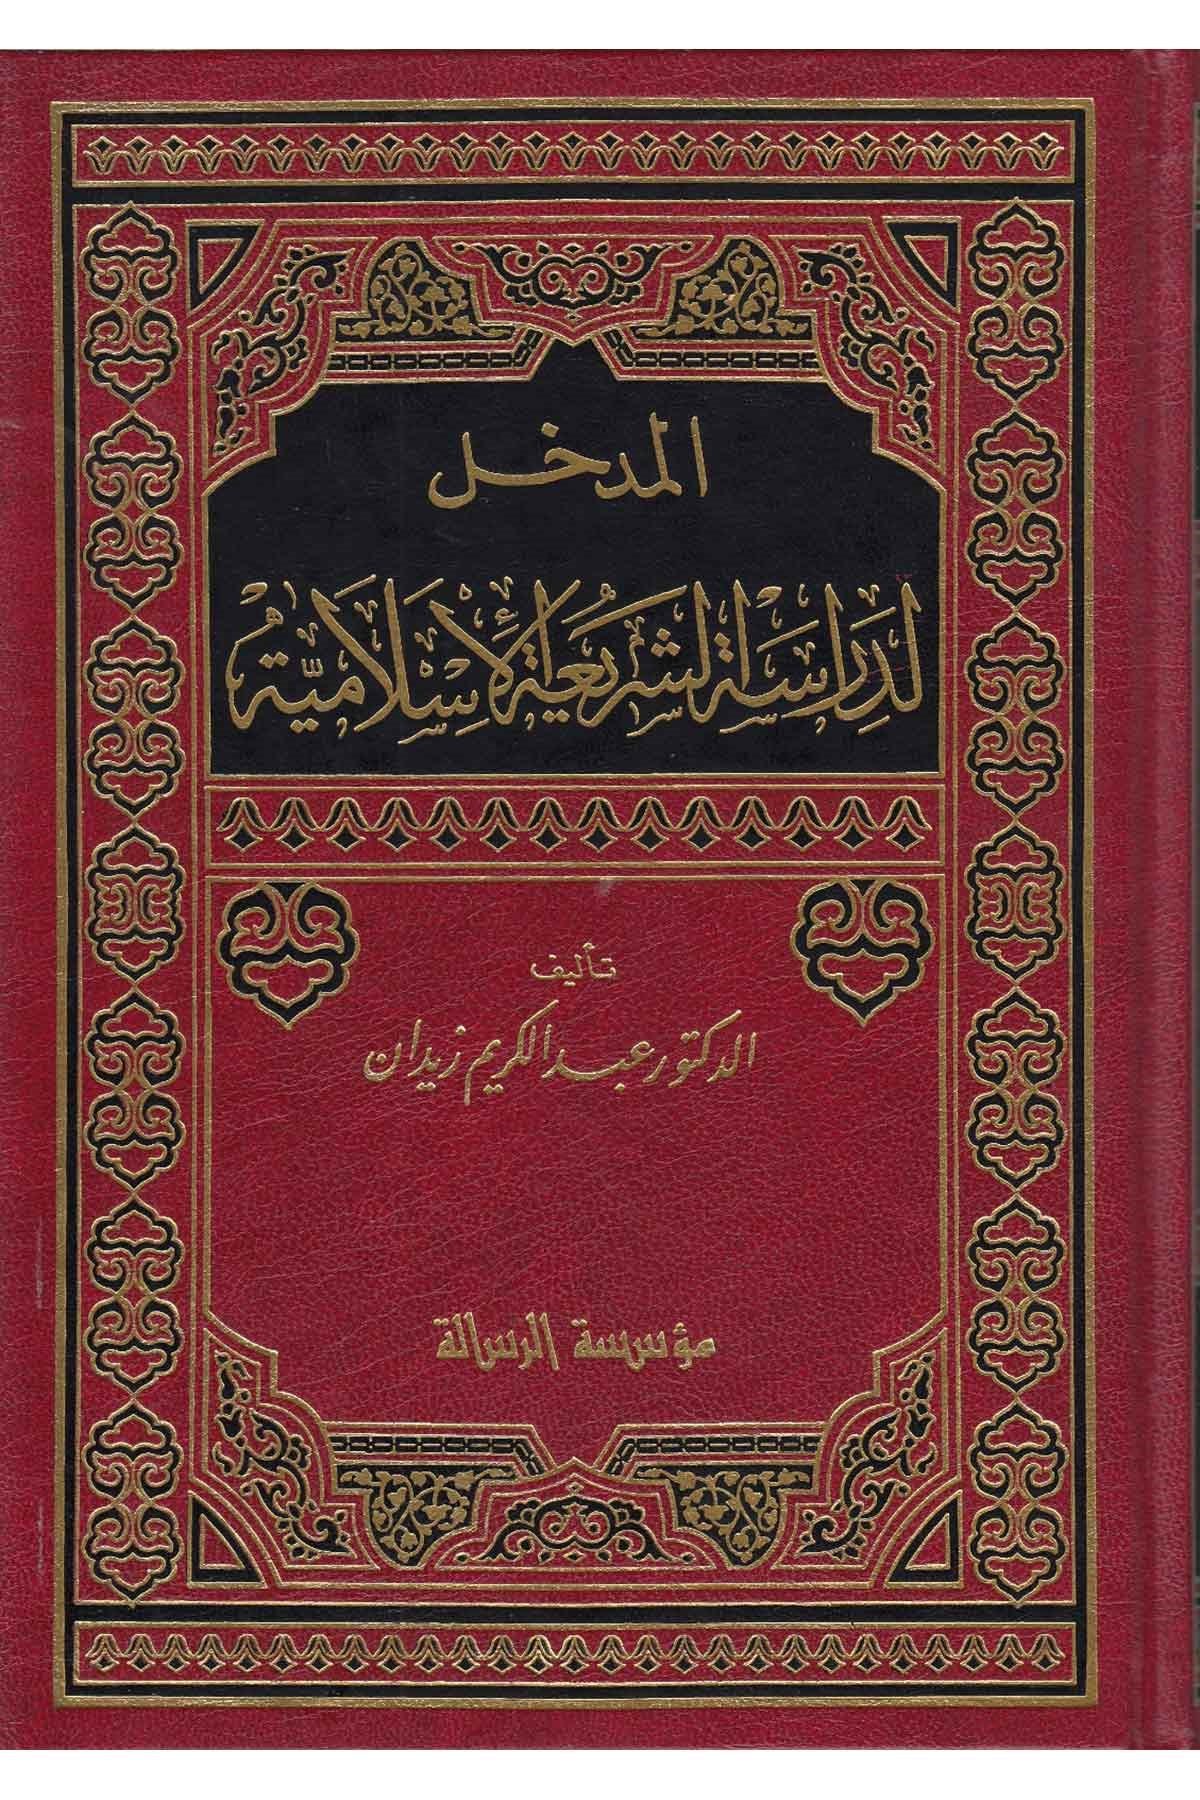 المدخل لدراسة الشريعة الاسلامية/ El-Medhal Li Dirasetiş-Şeriatil İslamiyye